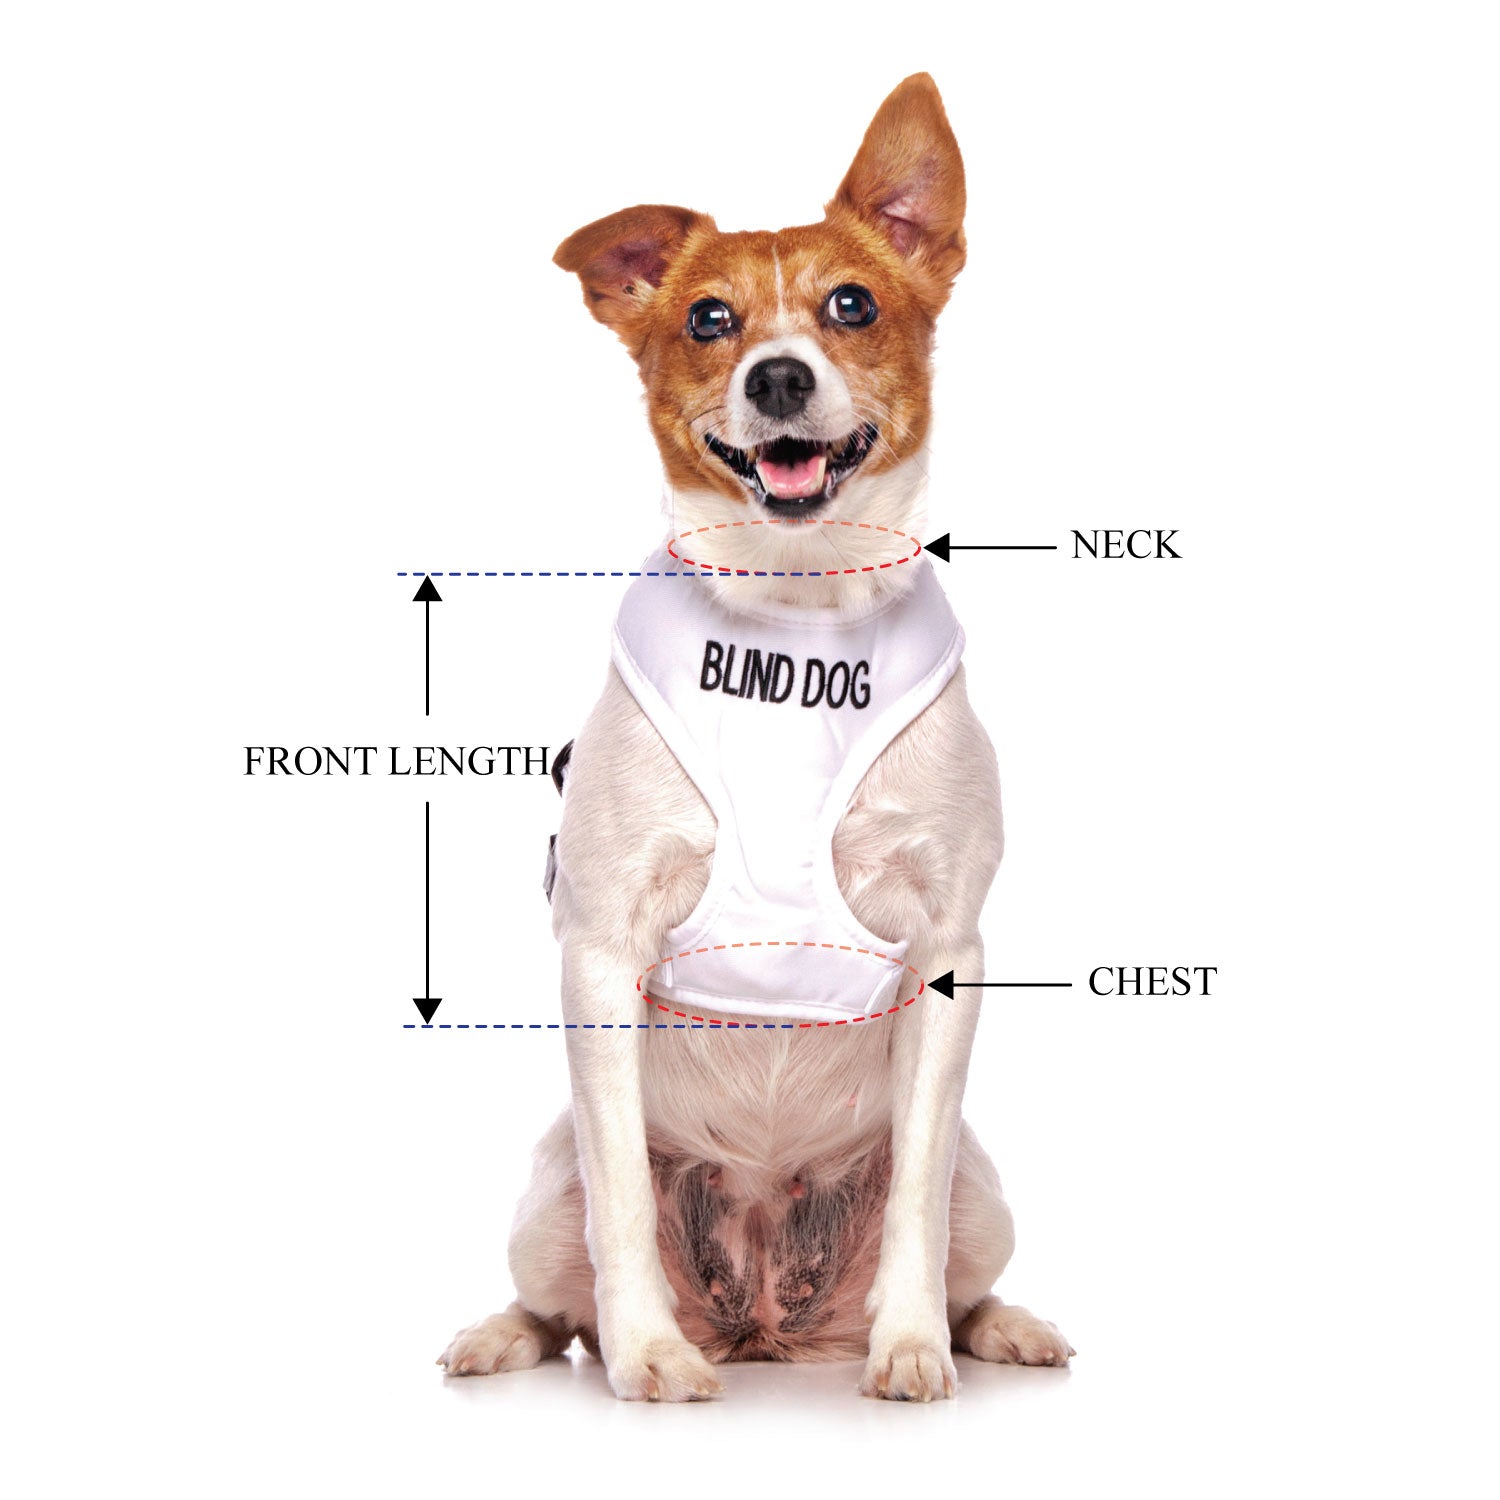 BLIND DOG - Small adjustable Vest Harness